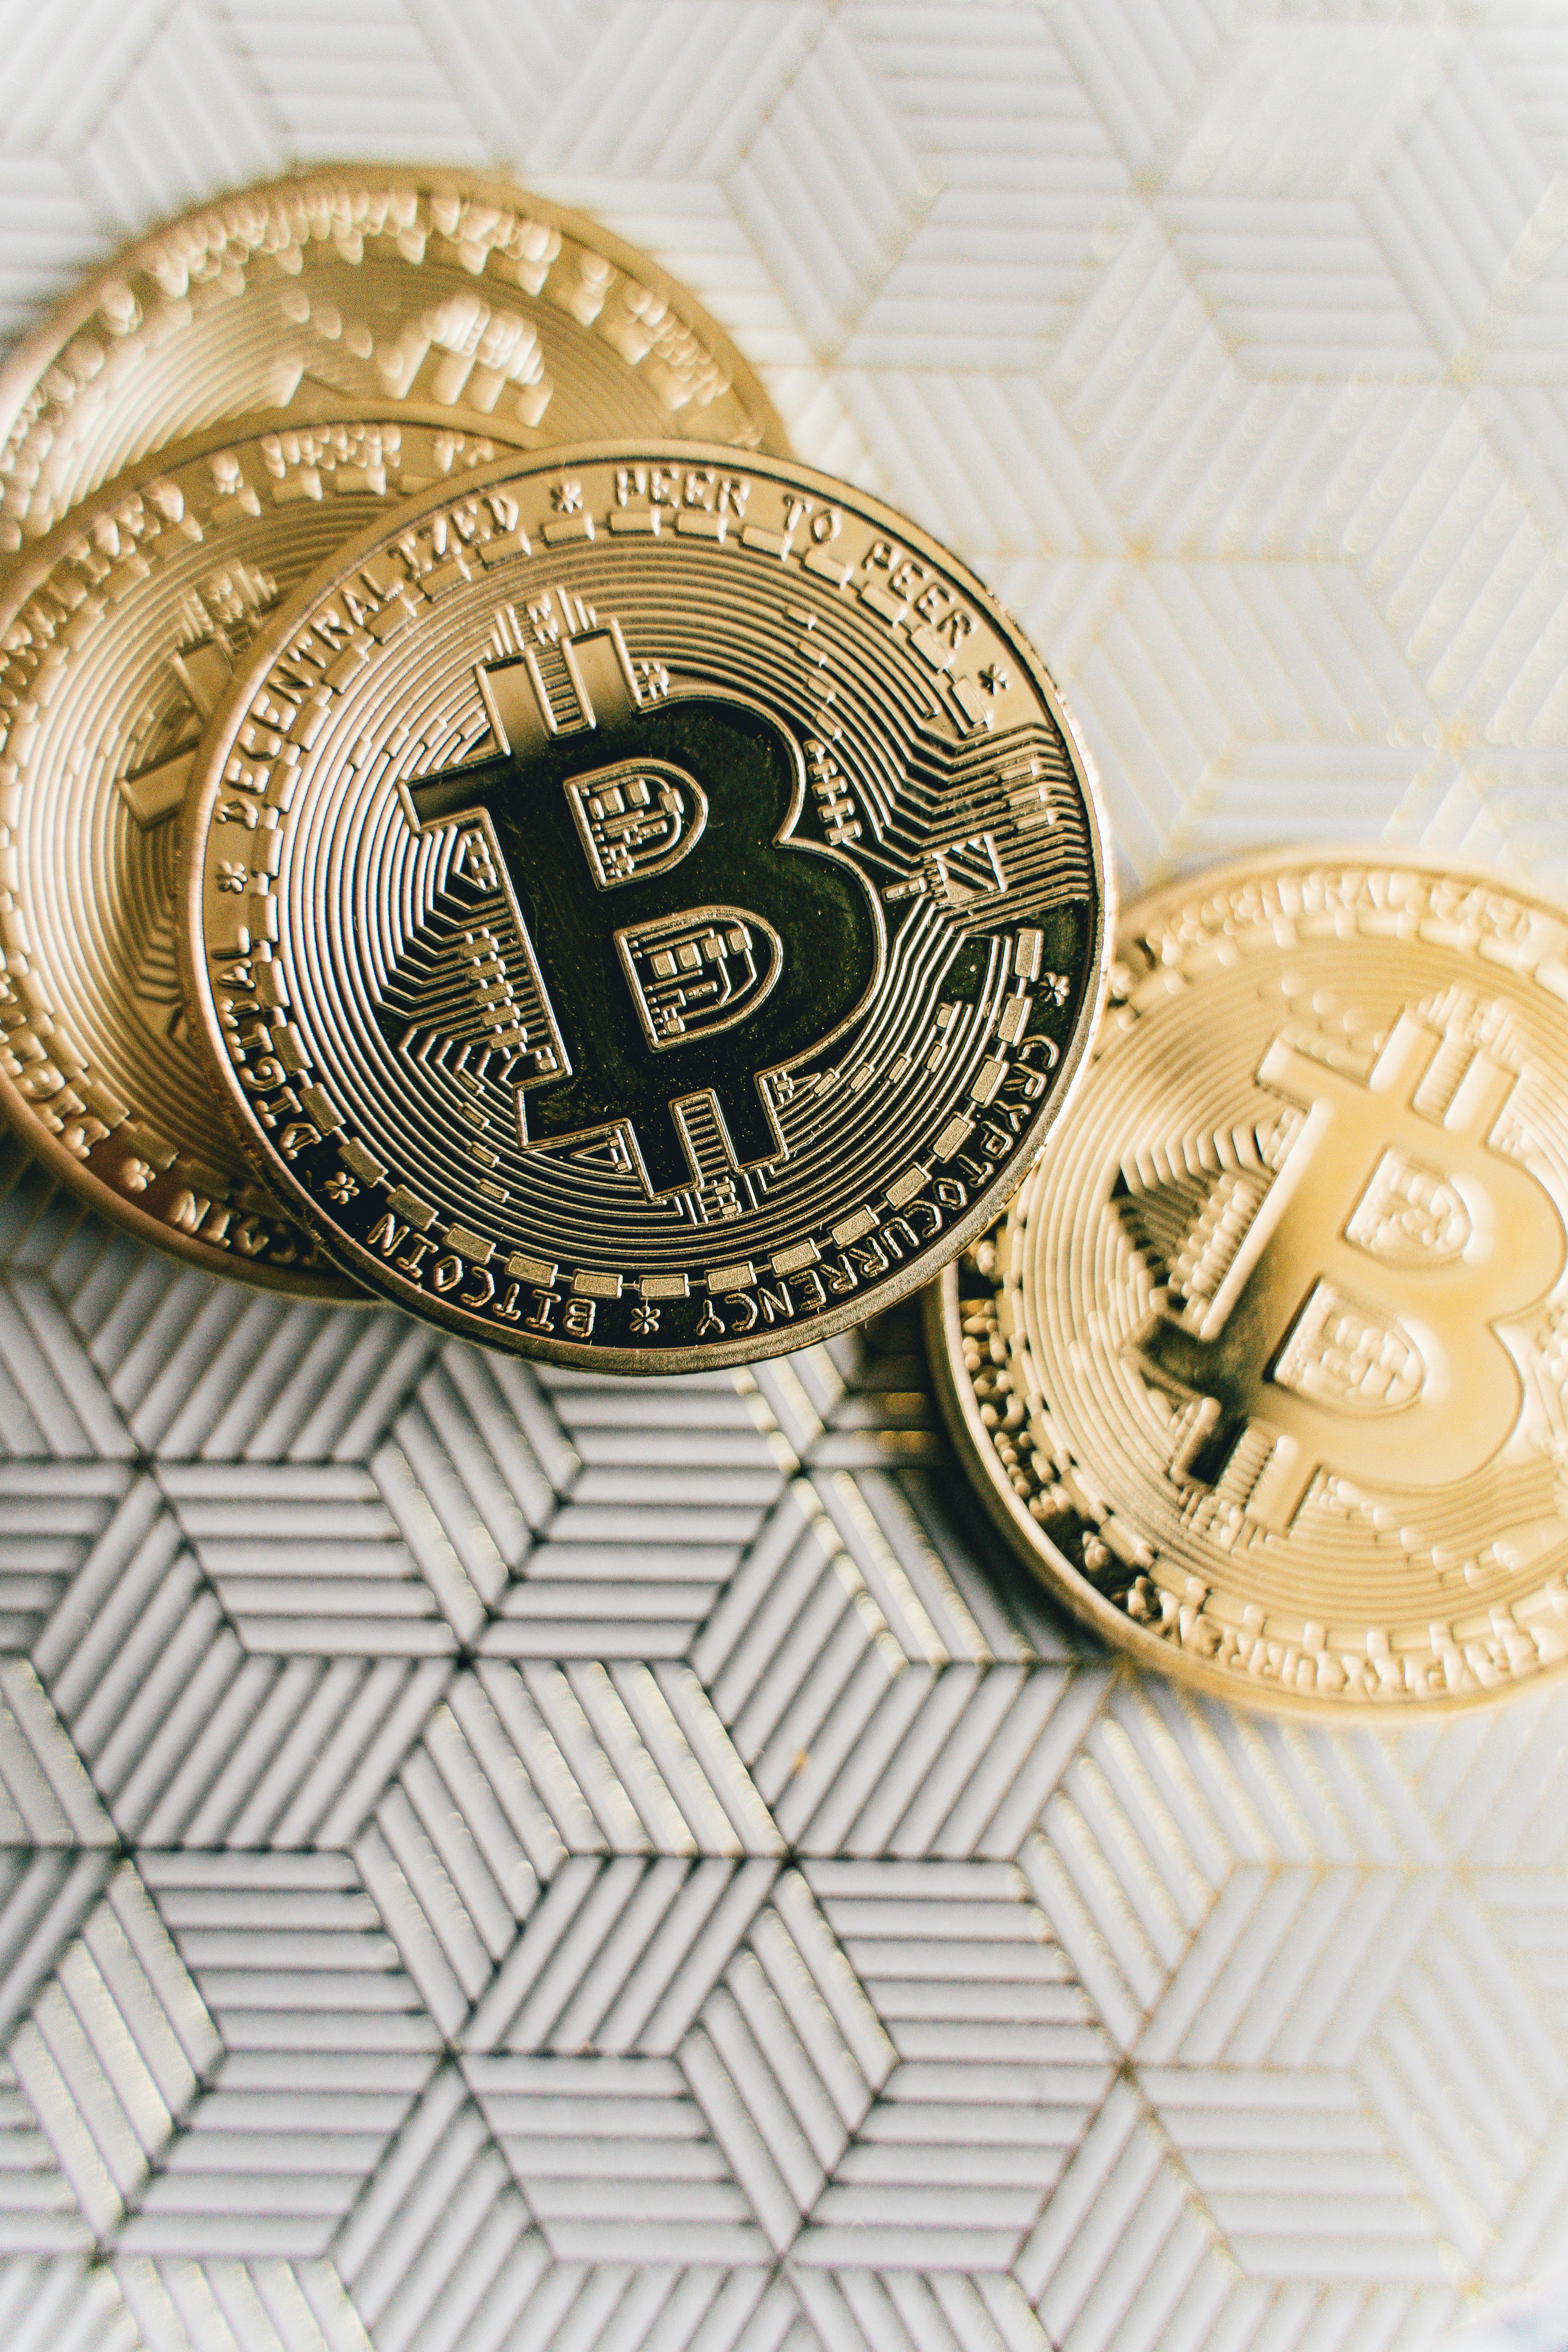 four bitcoins on the table